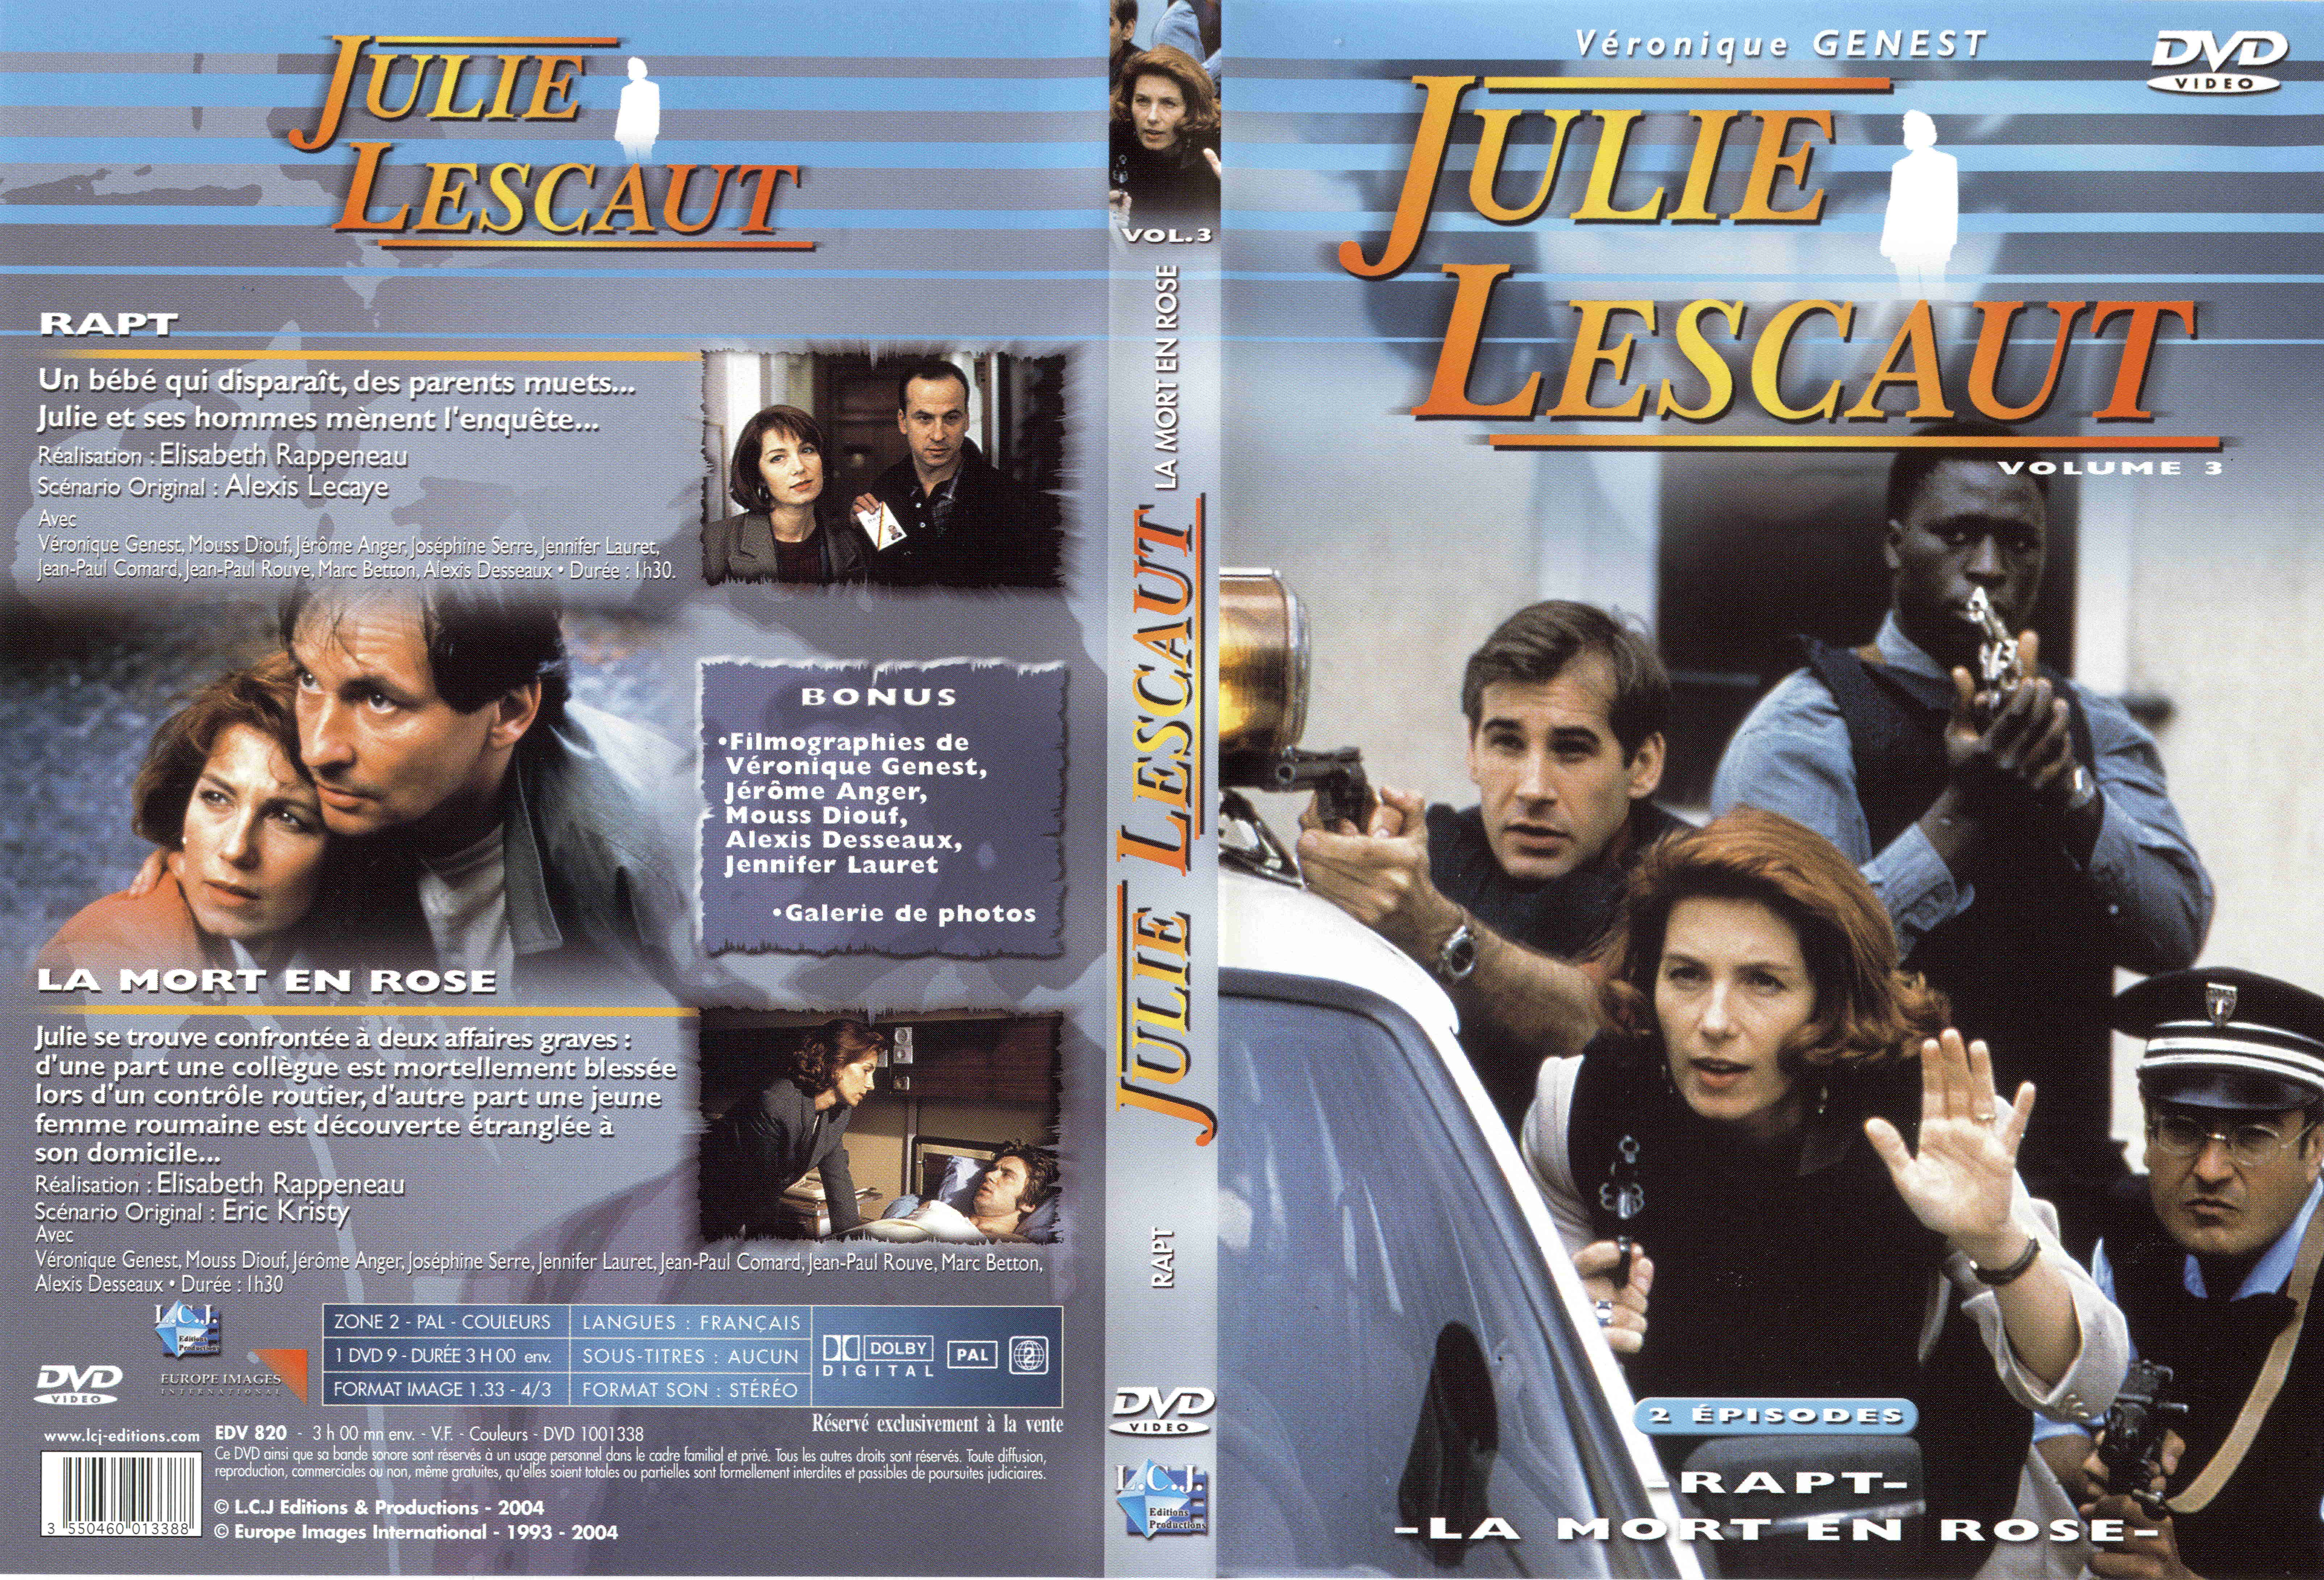 Jaquette DVD Julie Lescaut vol 03